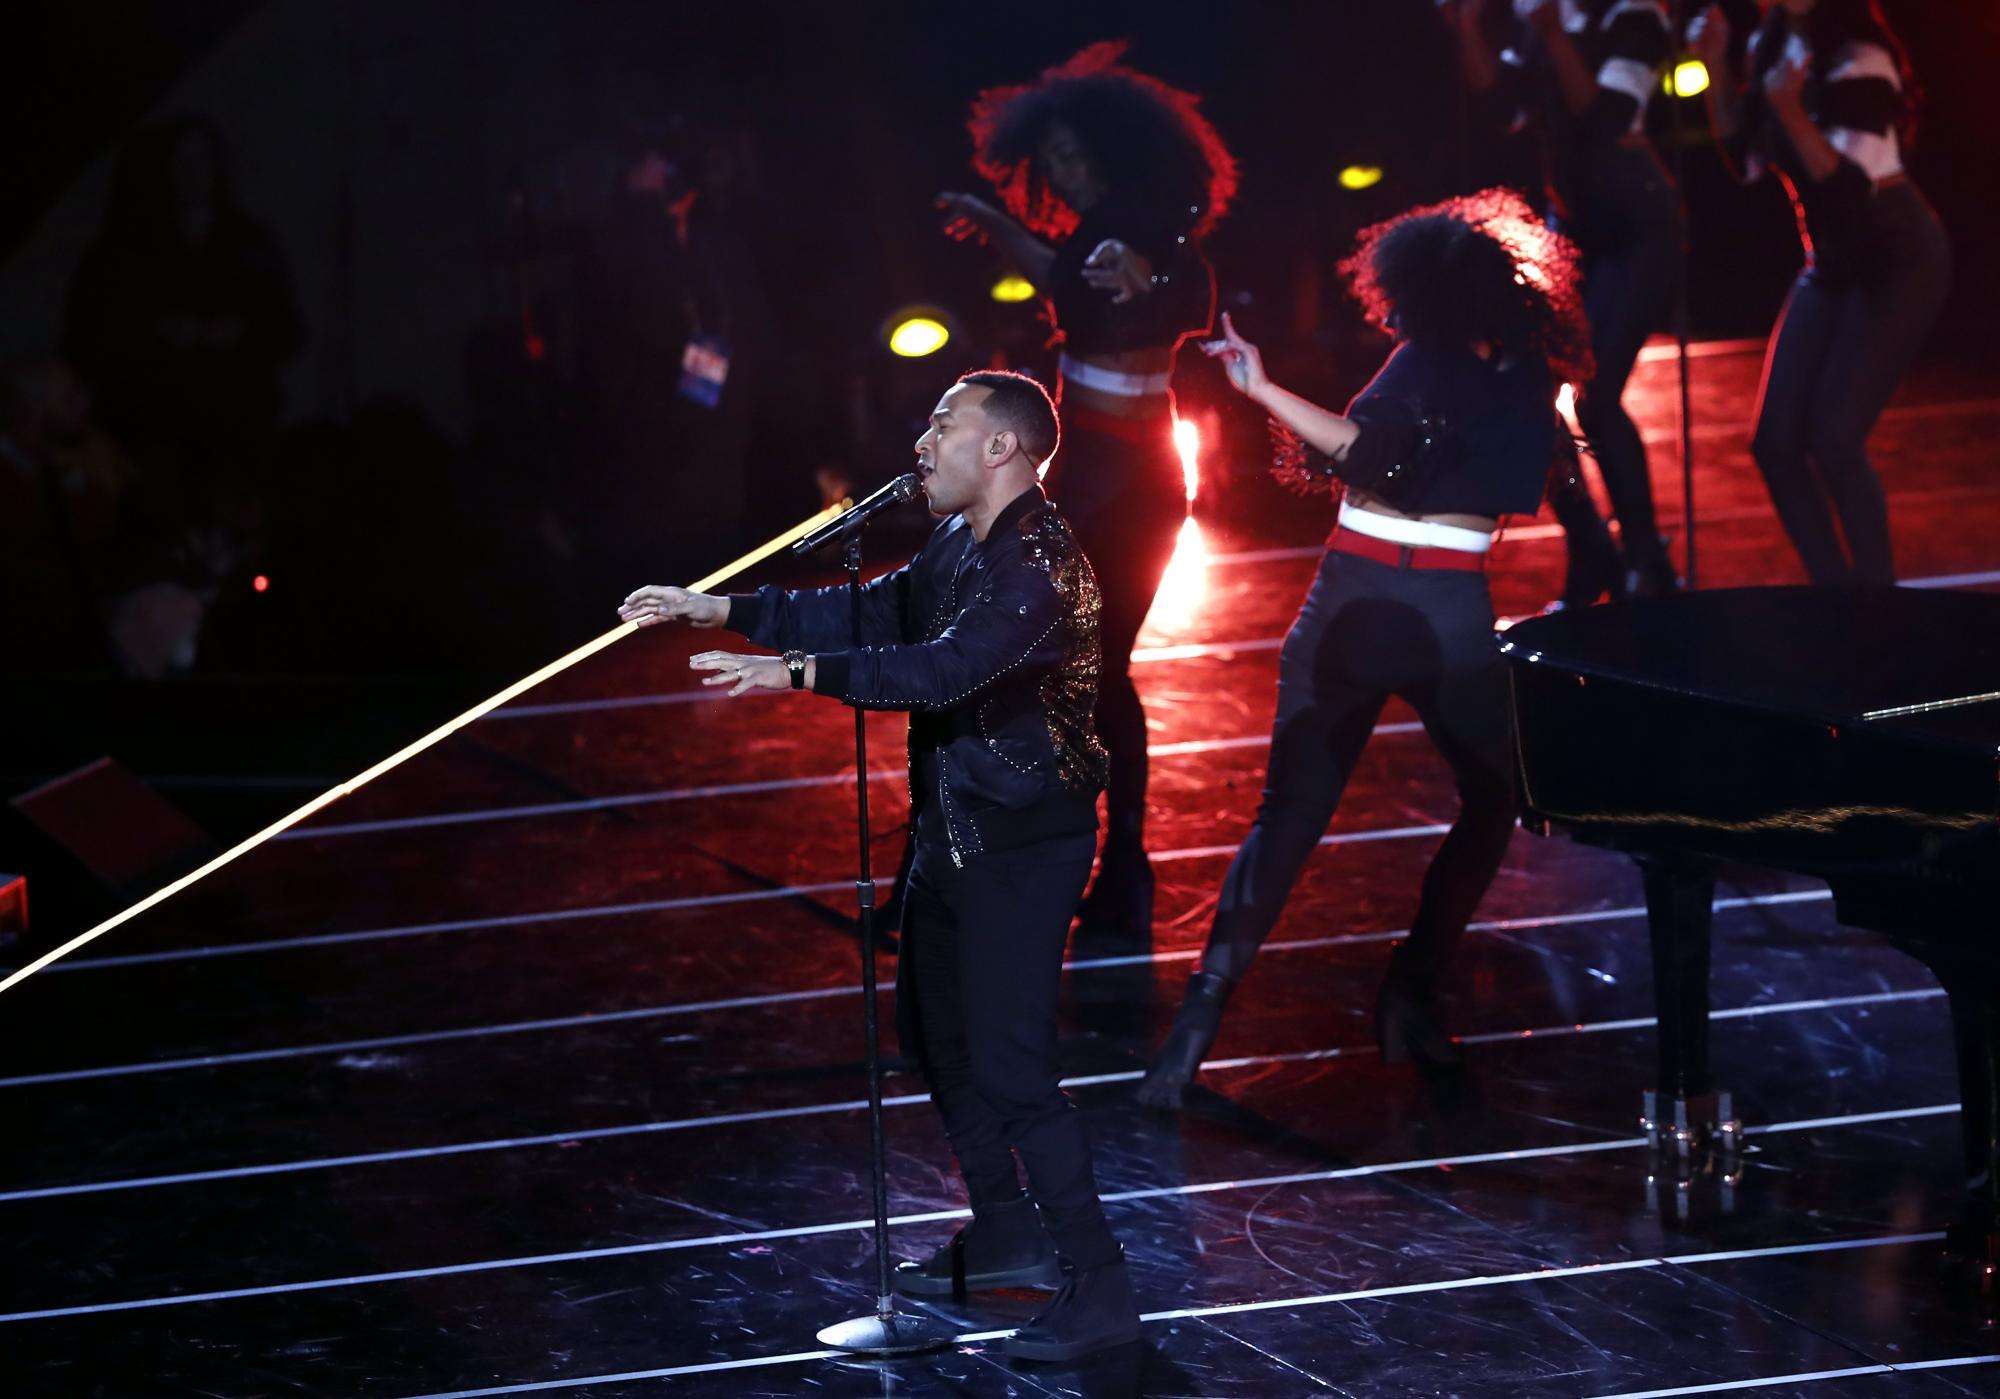 El cantante estadounidense John Legend encabezó la presentación artística en el mediotiempo del partido de las Estrellas el domingo en el Smoothie King Center en New Orleans, Louisiana.